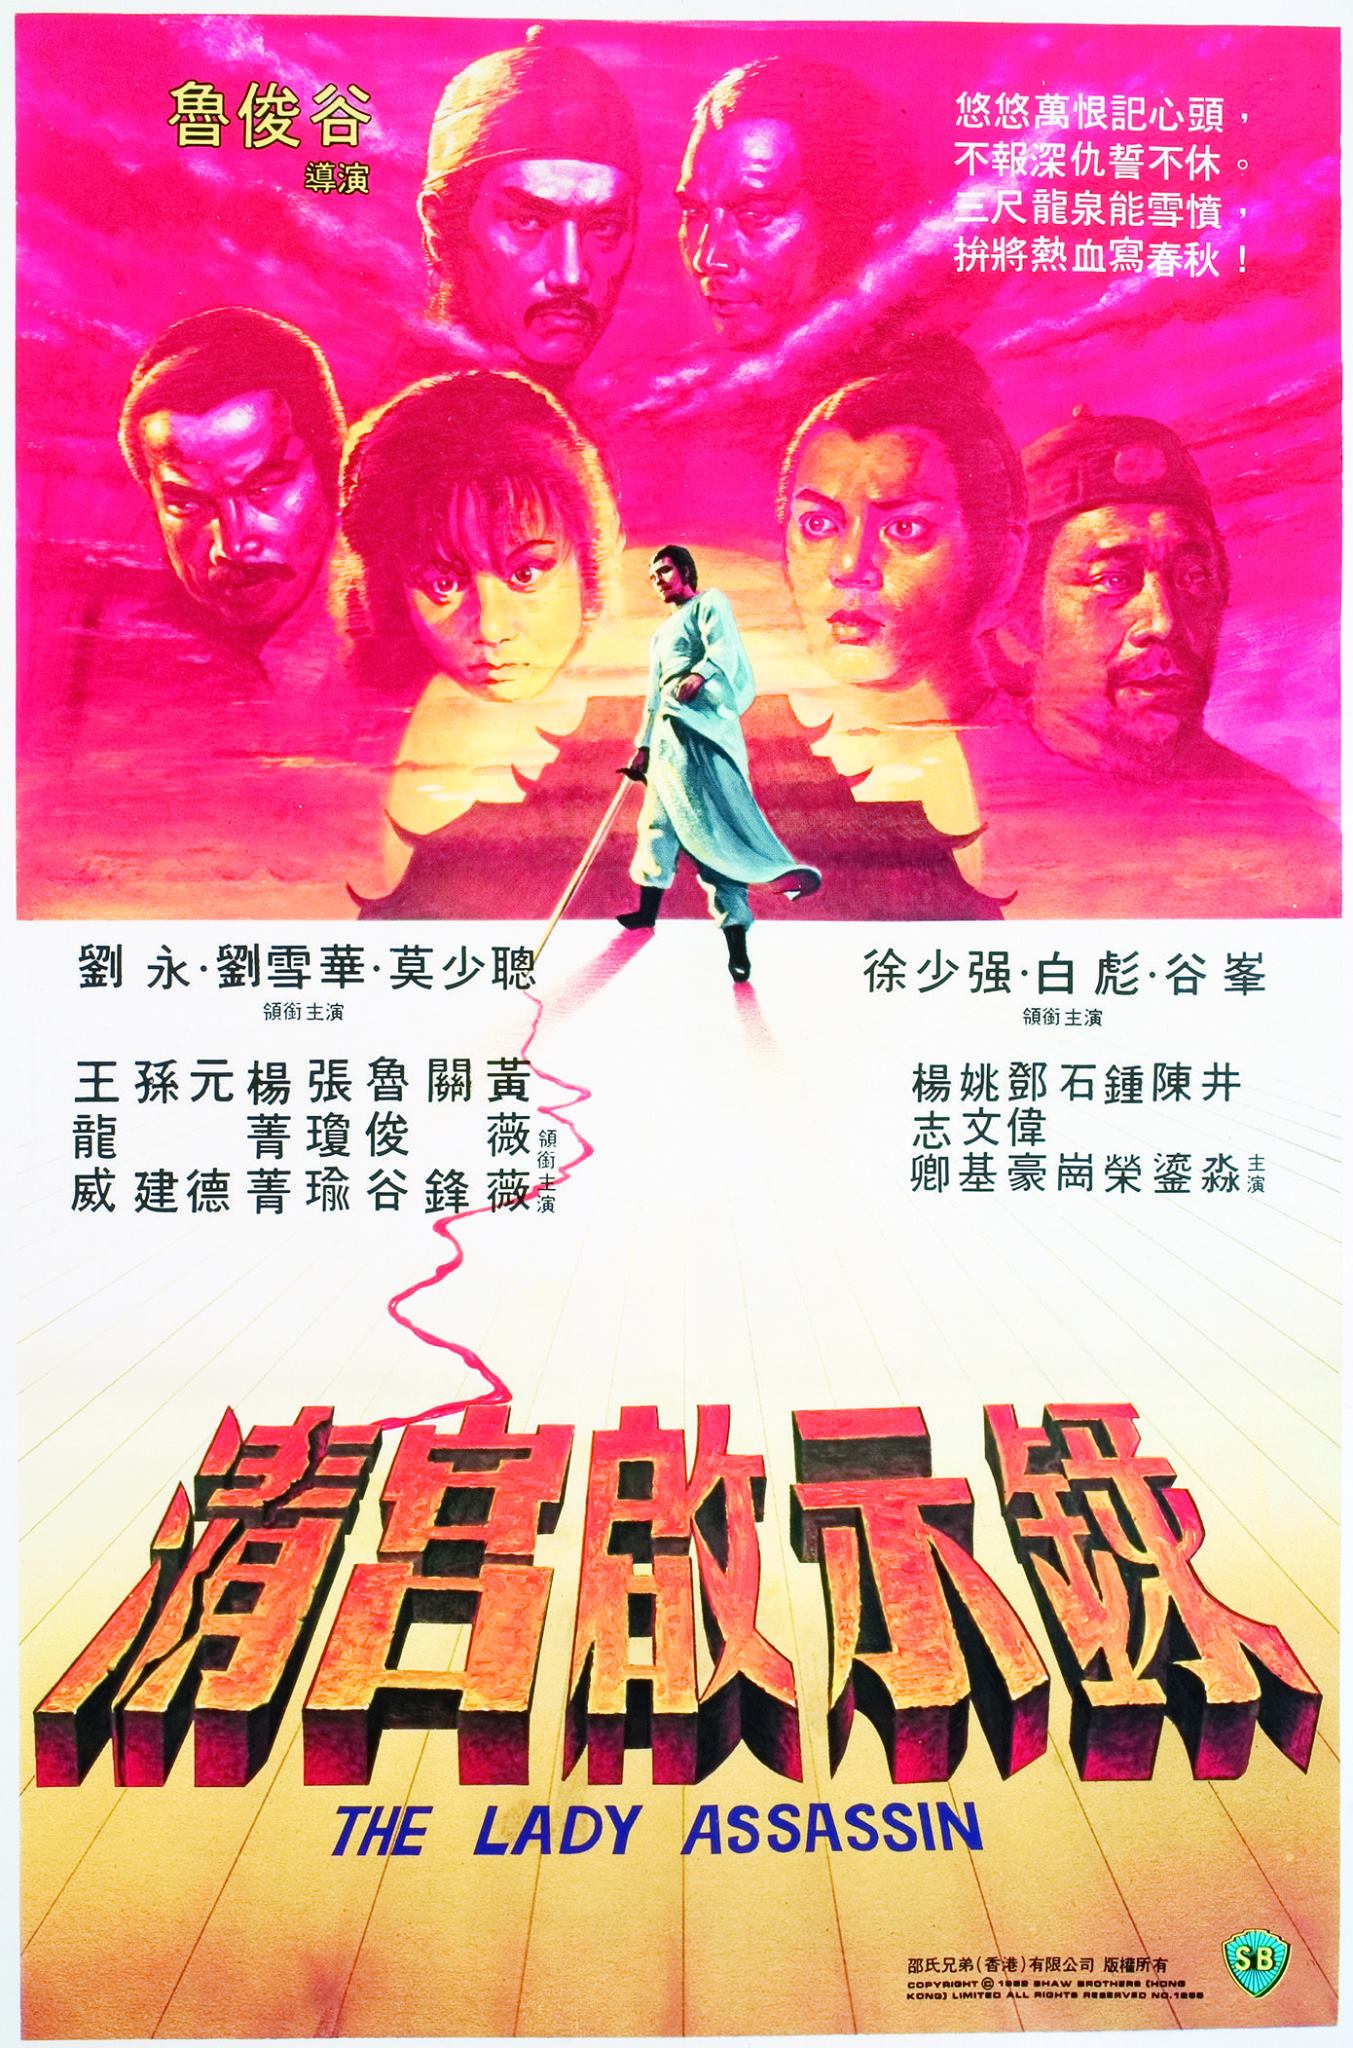 Qing gong qi shi lu (1983) Screenshot 1